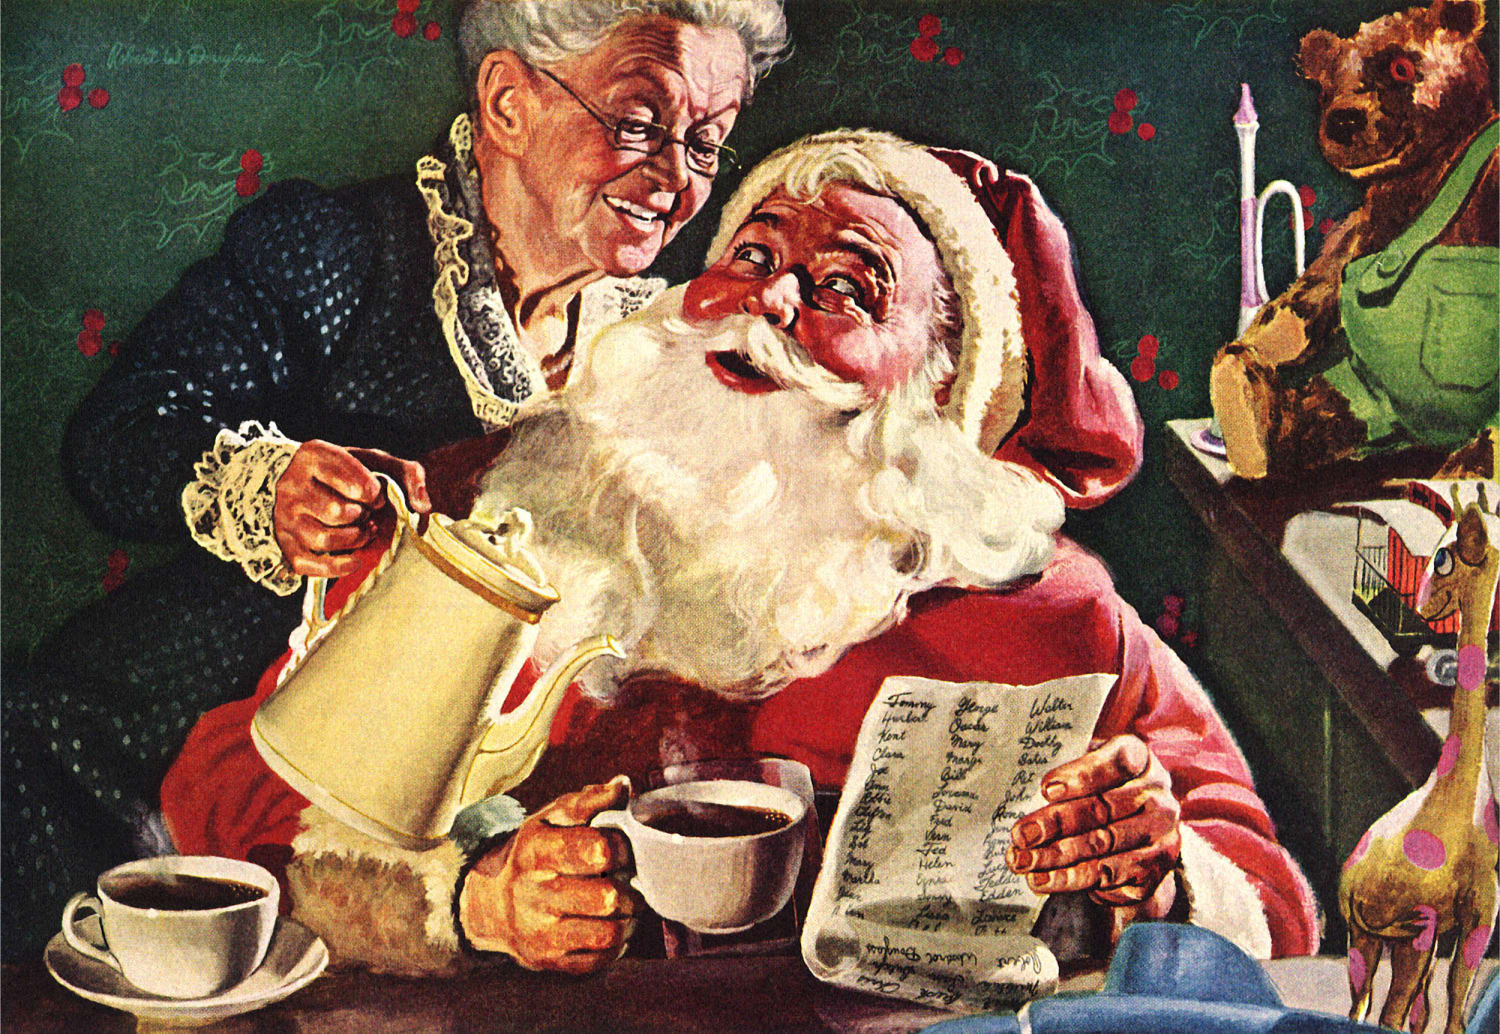 Naughty Or Nice Christmas Santa's Naughty List